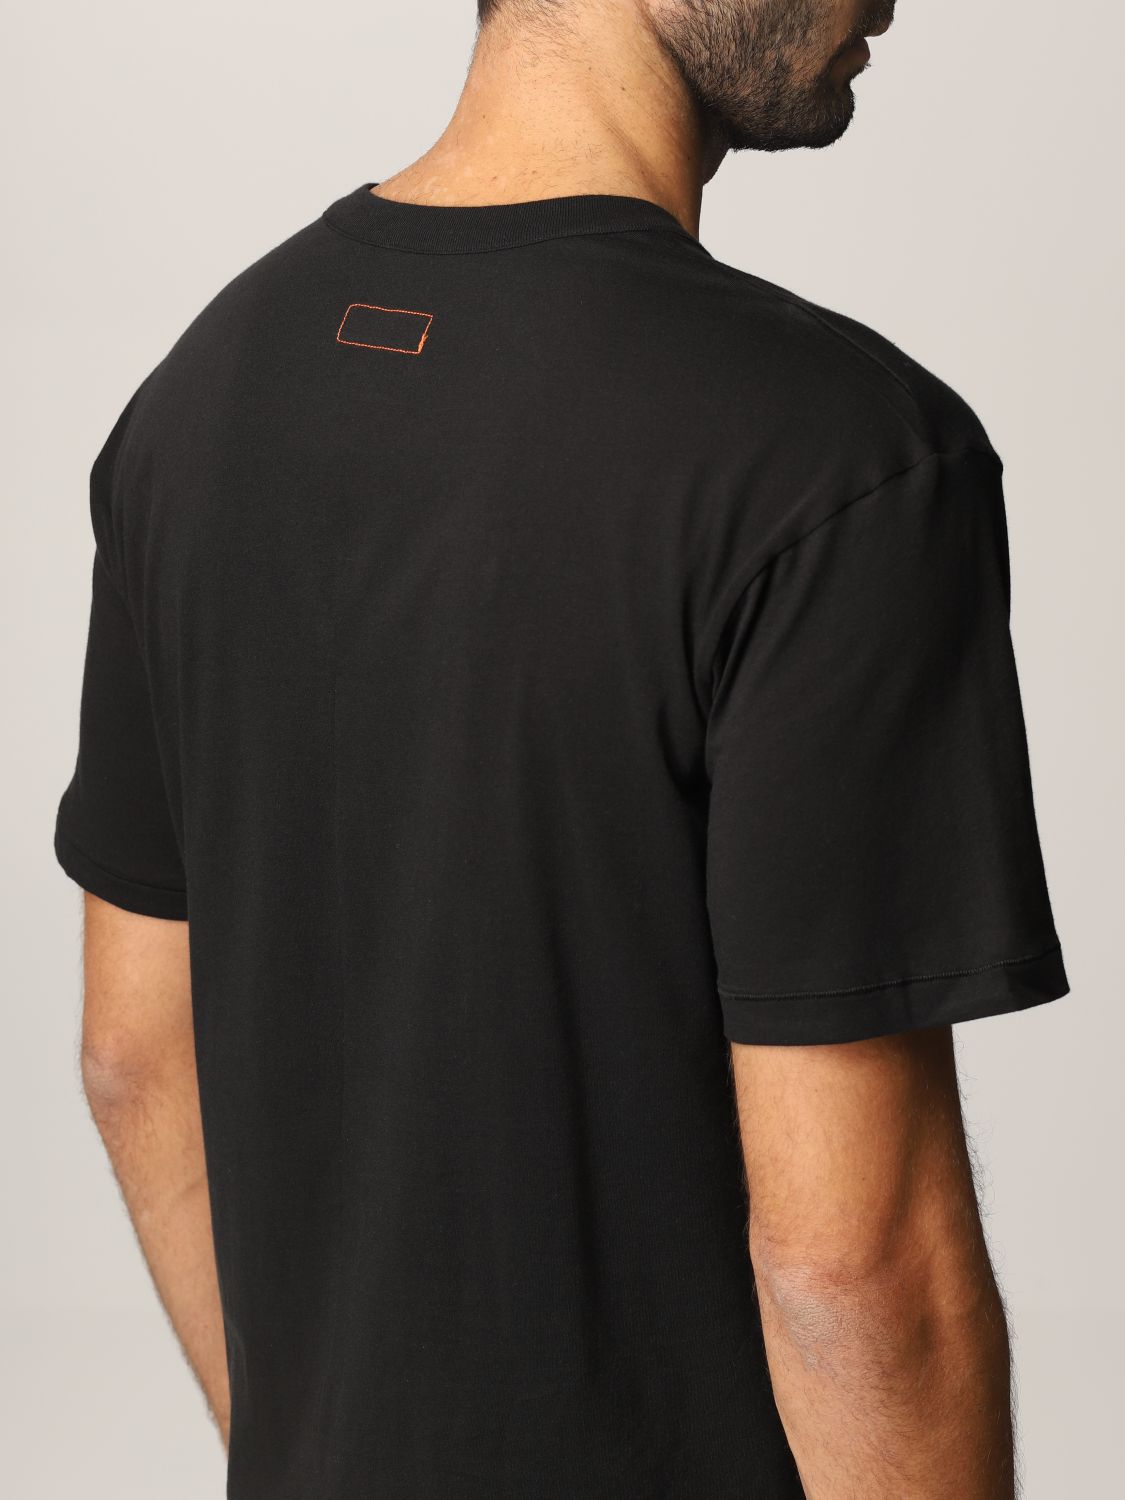 T-Shirt Heron Preston For Calvin Klein: T-shirt herren Orange 2.0-heron Preston X Calvin Klein schwarz 6